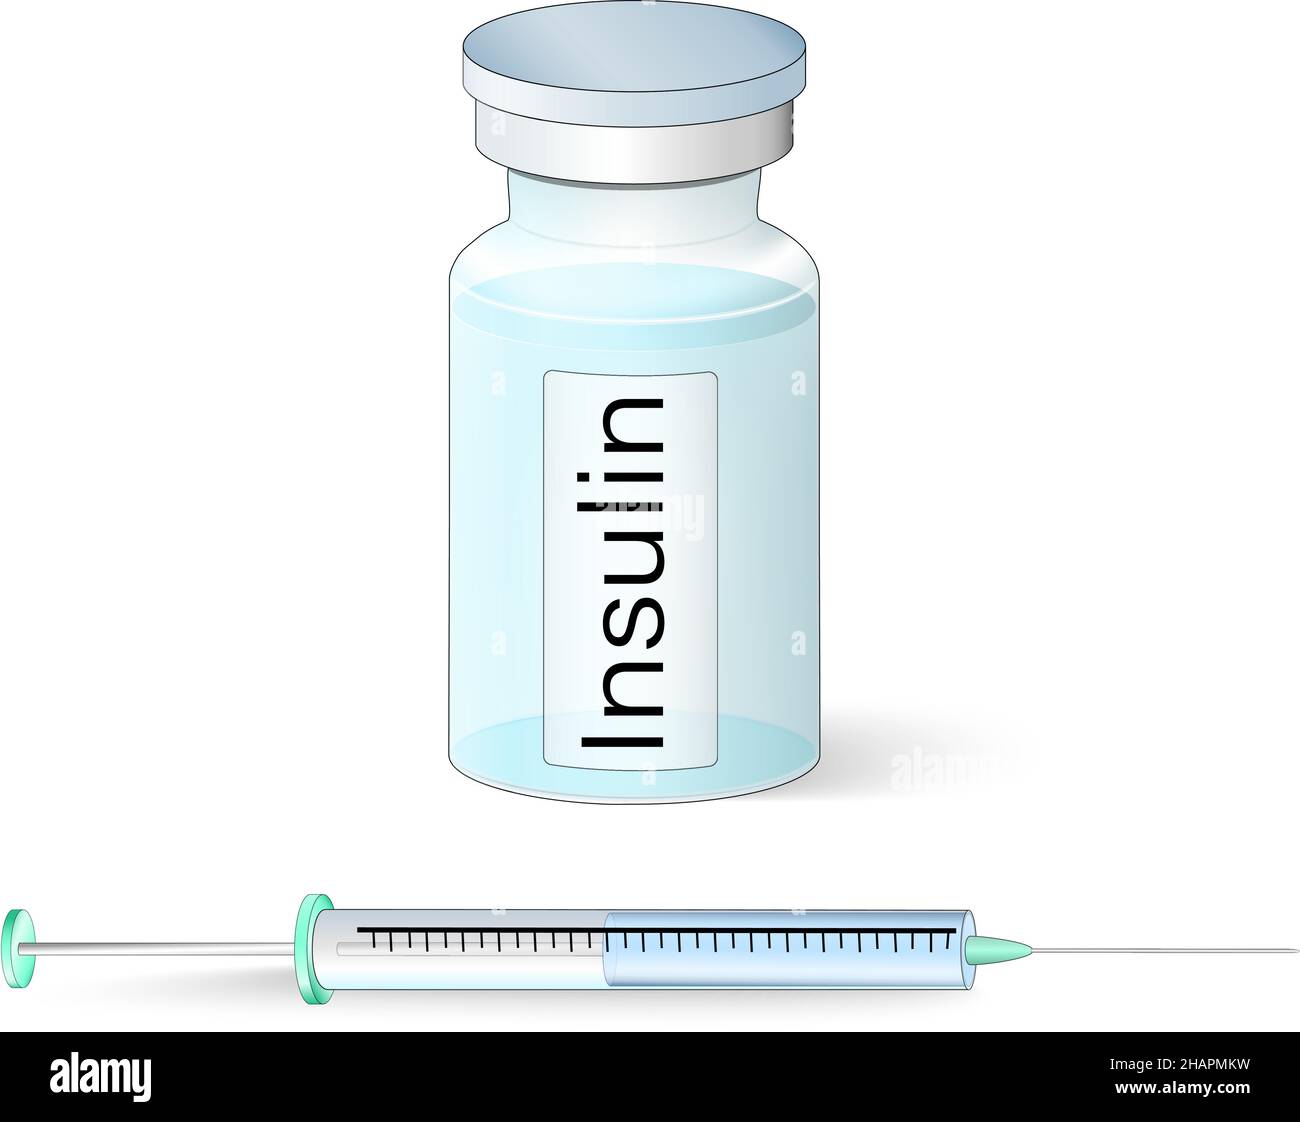 Insulina in flaconcino di vetro e siringa per insulina. Diabete. Illustrazione vettoriale isolata. Soluzione iniettabile Illustrazione Vettoriale